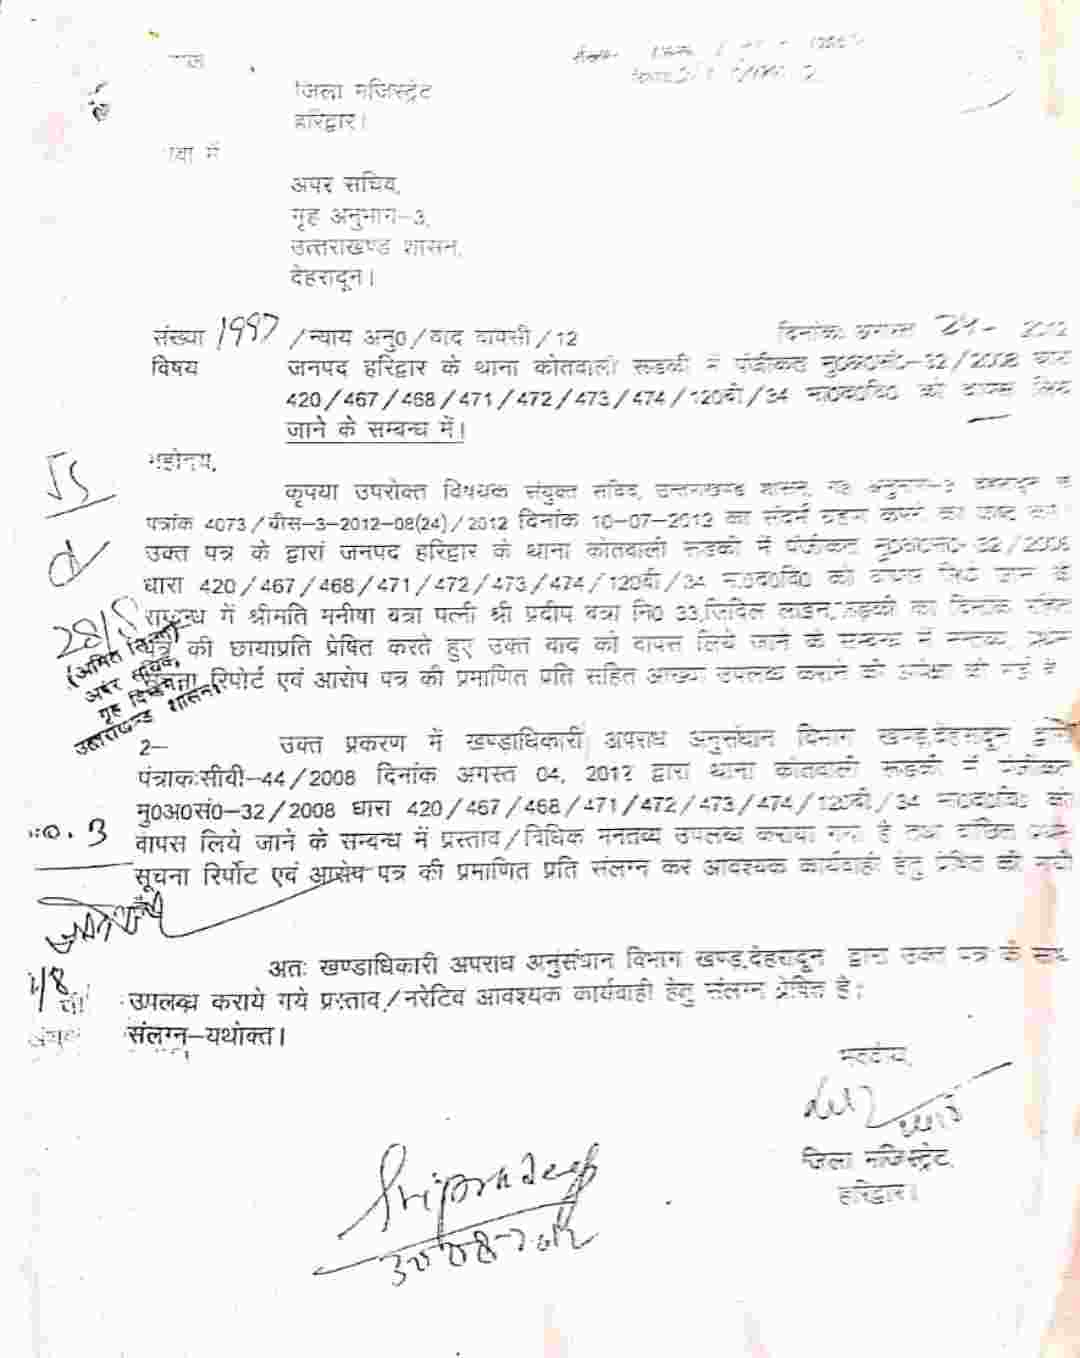 Uttarakhand: विधायक प्रदीप बत्रा मामले में दरोगा का स्थानांतरण पुलिसिया कार्रवाई पर प्रश्नचिन्ह, स्थानांतरण जल्दबाजी में लिया गया निर्णय - मोर्चा 2 Hello Uttarakhand News »